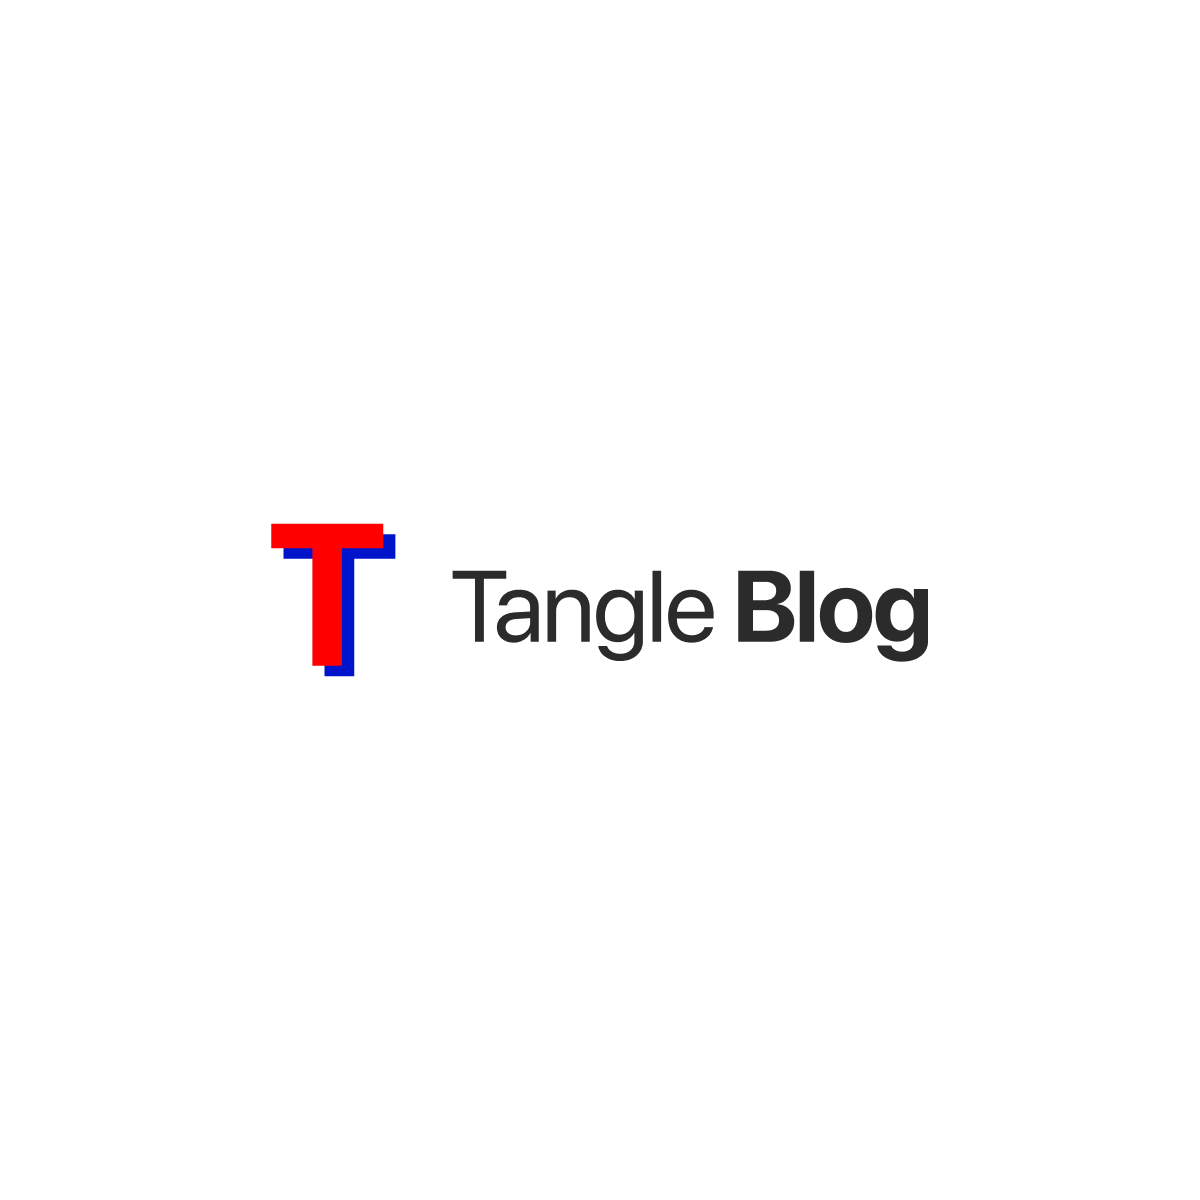 TangleBlog.com logo